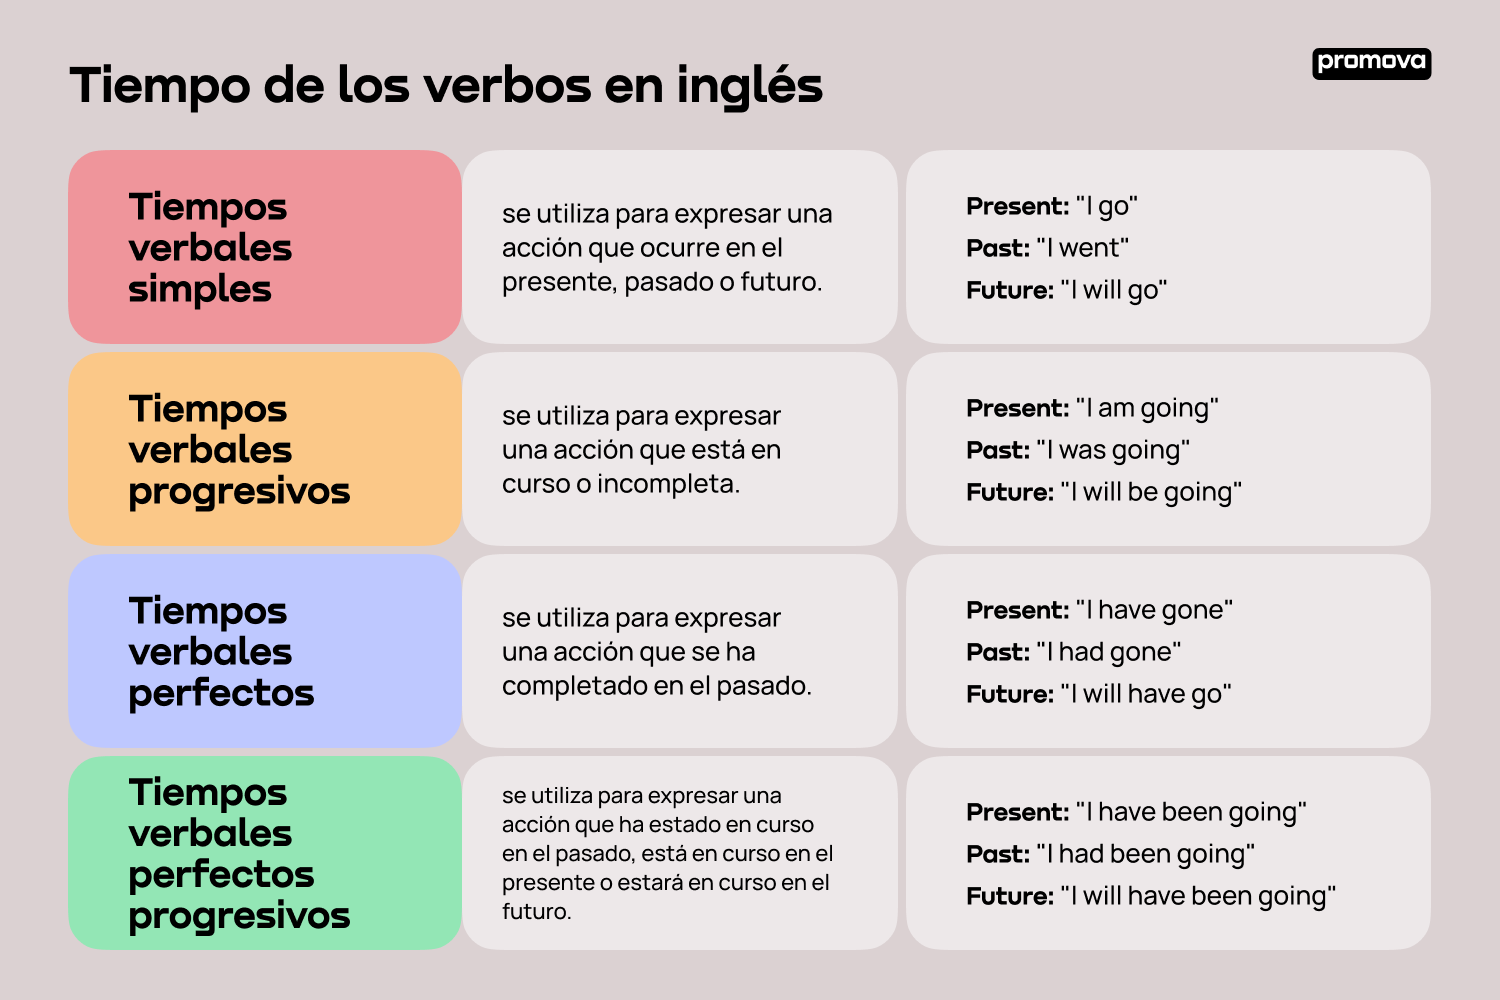 Mejora tu comprensión del tiempo de los verbos en inglés con esta guía